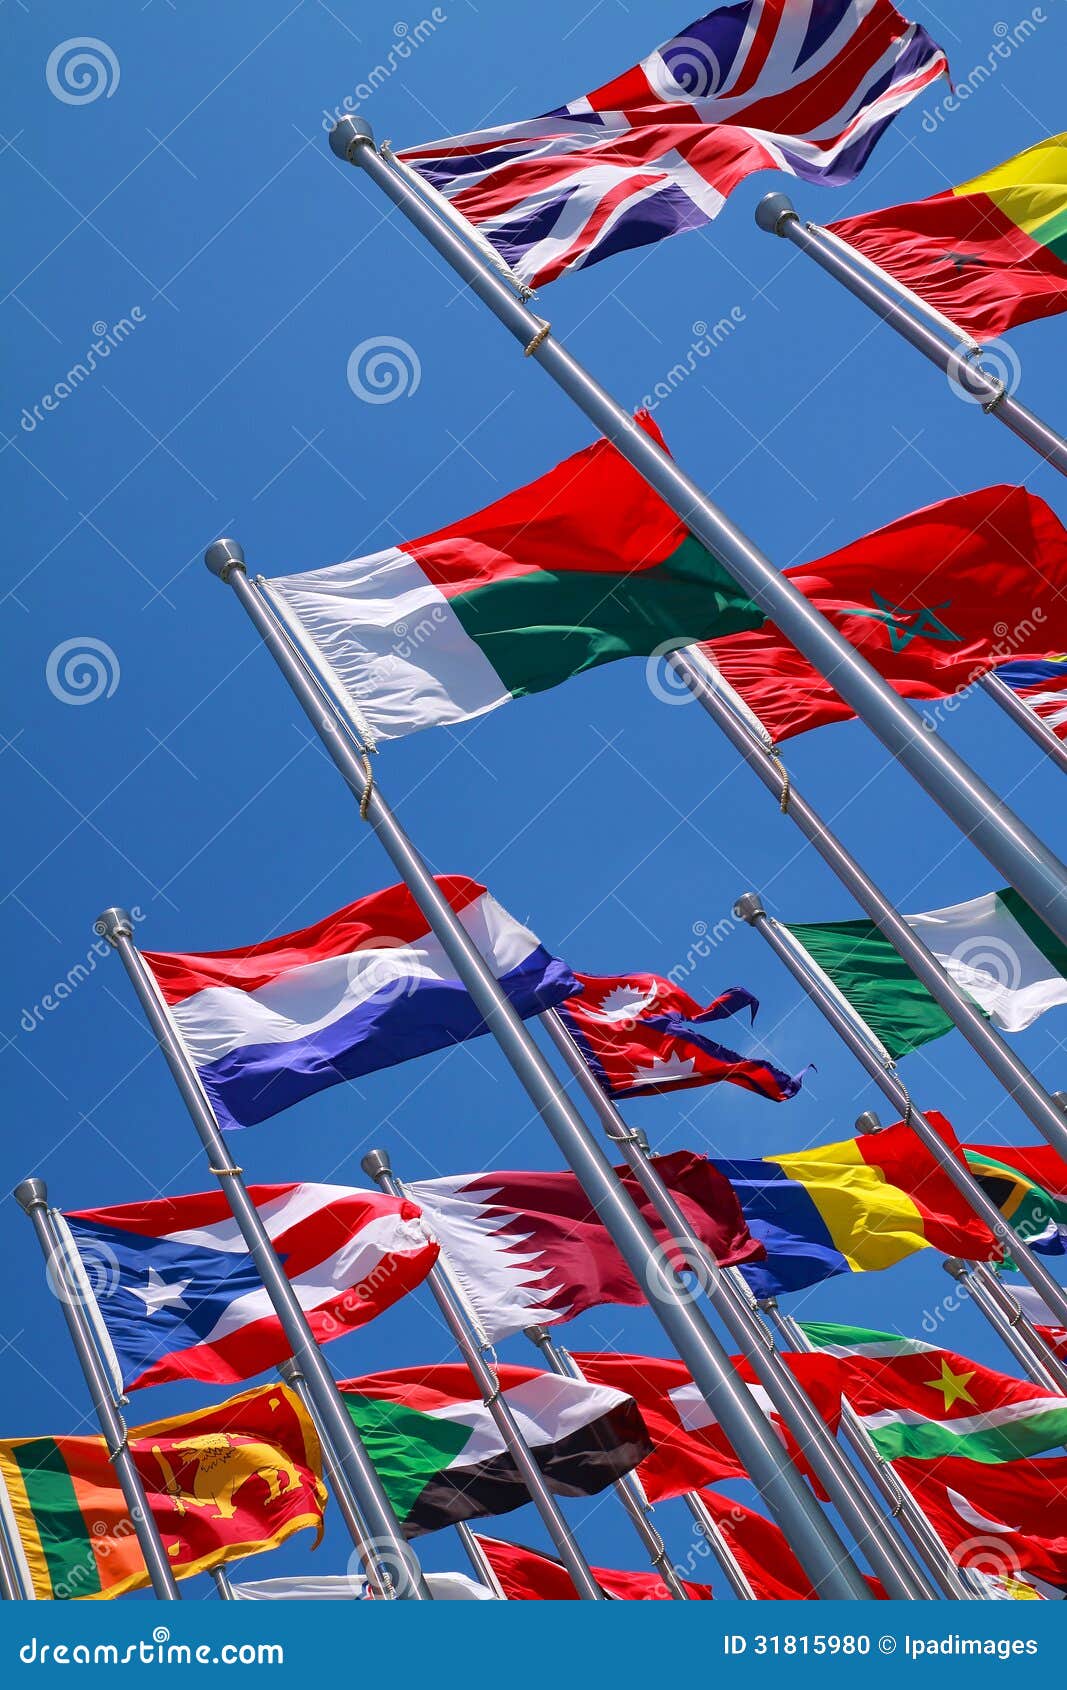 1,611,242 Banderas De Todos Los Países Del Mundo Royalty-Free Images, Stock  Photos & Pictures